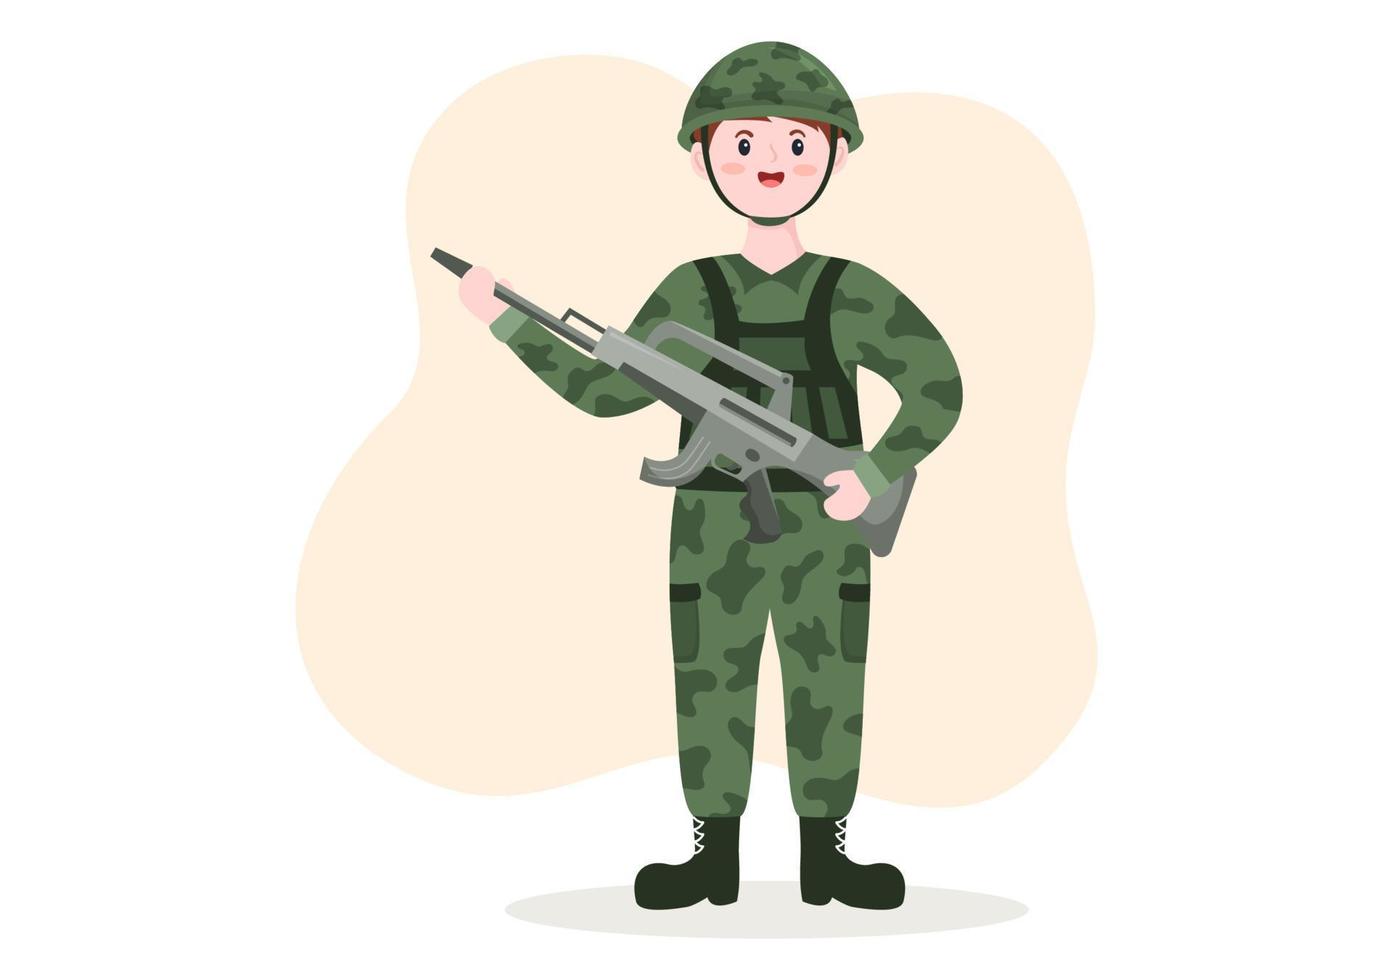 plantilla de fuerza del ejército militar dibujada a mano ilustración plana de dibujos animados lindo con soldado, arma, tanque o equipo pesado de protección vector